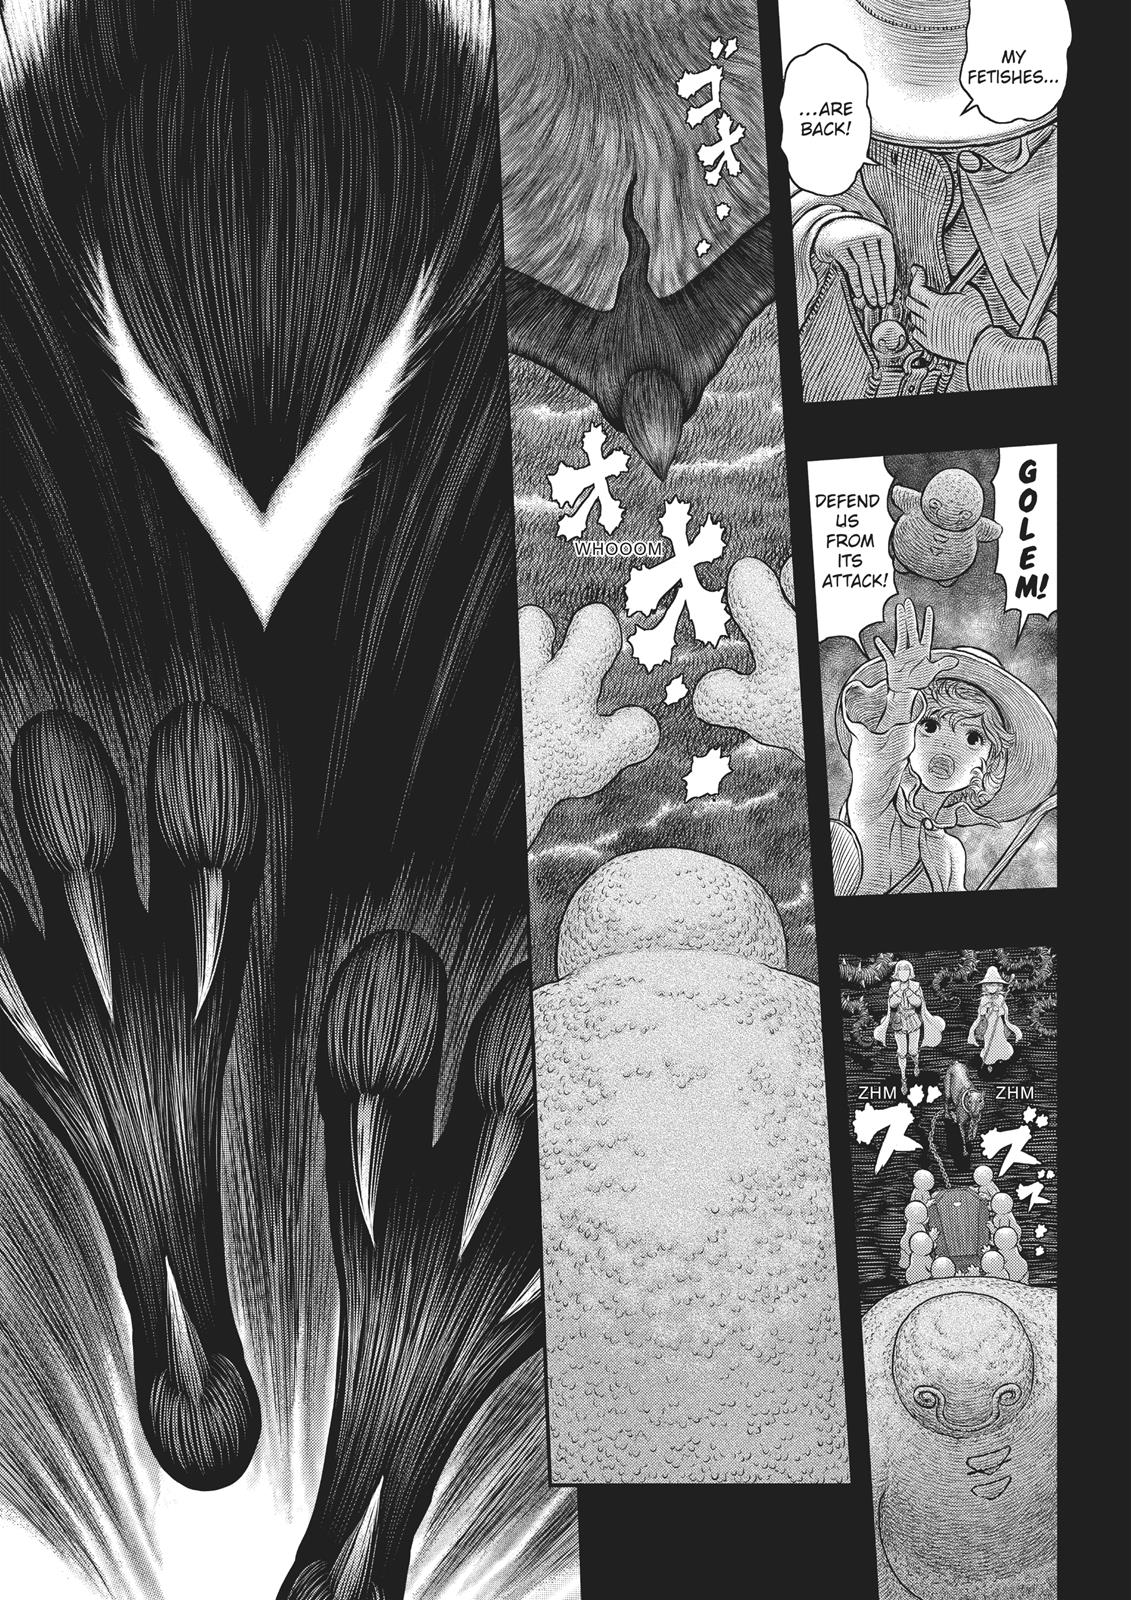 Berserk Manga Chapter 352 image 04